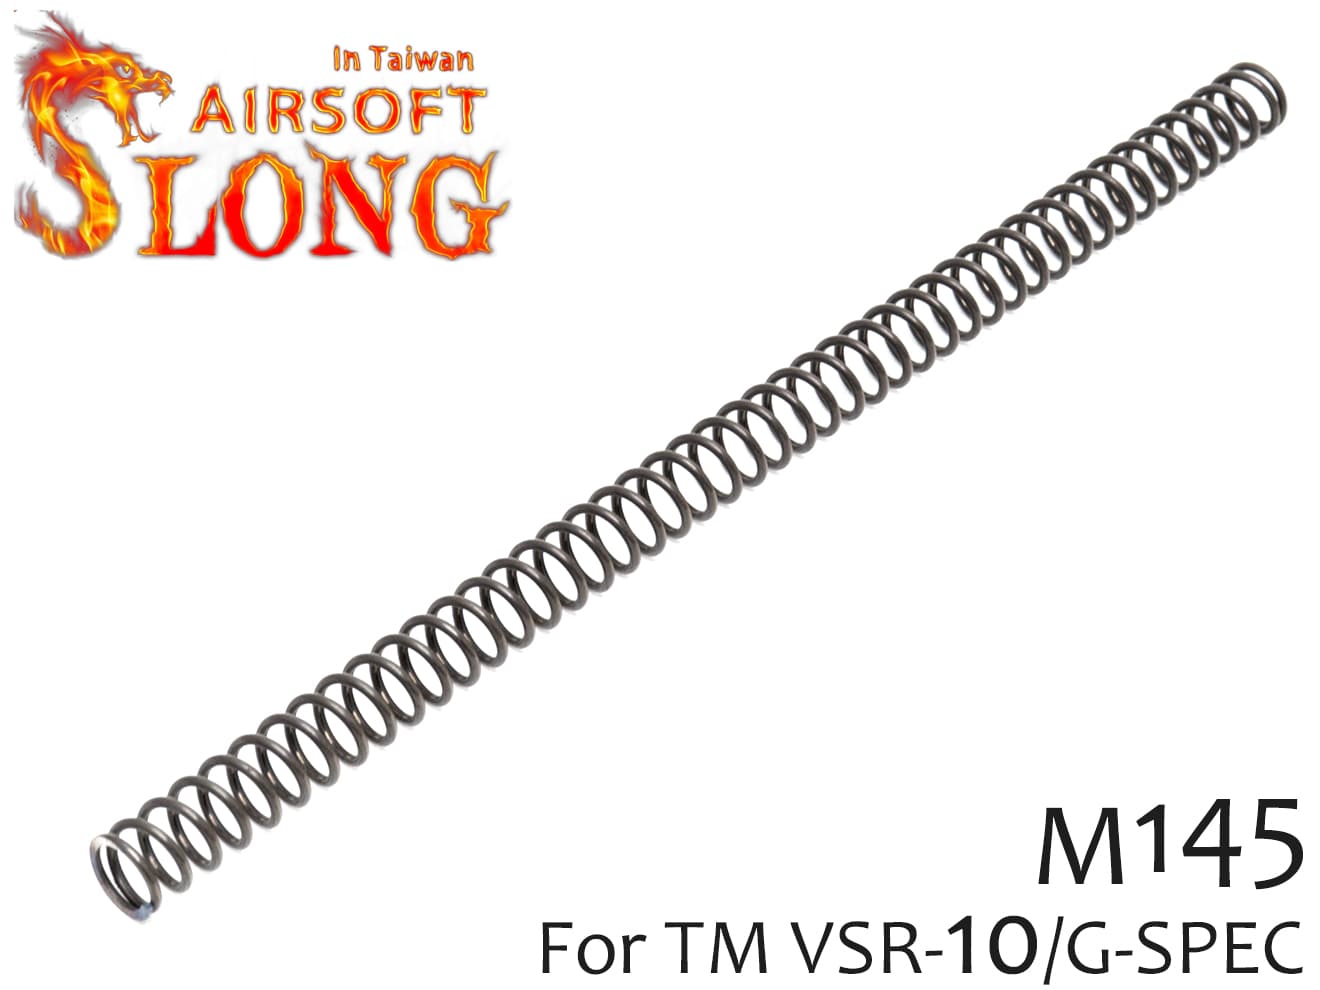 SLONG AIRSOFT M145 等ピッチ 強化スプリング VSR-10◆東京マルイ VSR-10/G-SPEC対応 超ハイレートスプリング 長距離 命中精度向上 ハイチューンカスタムに